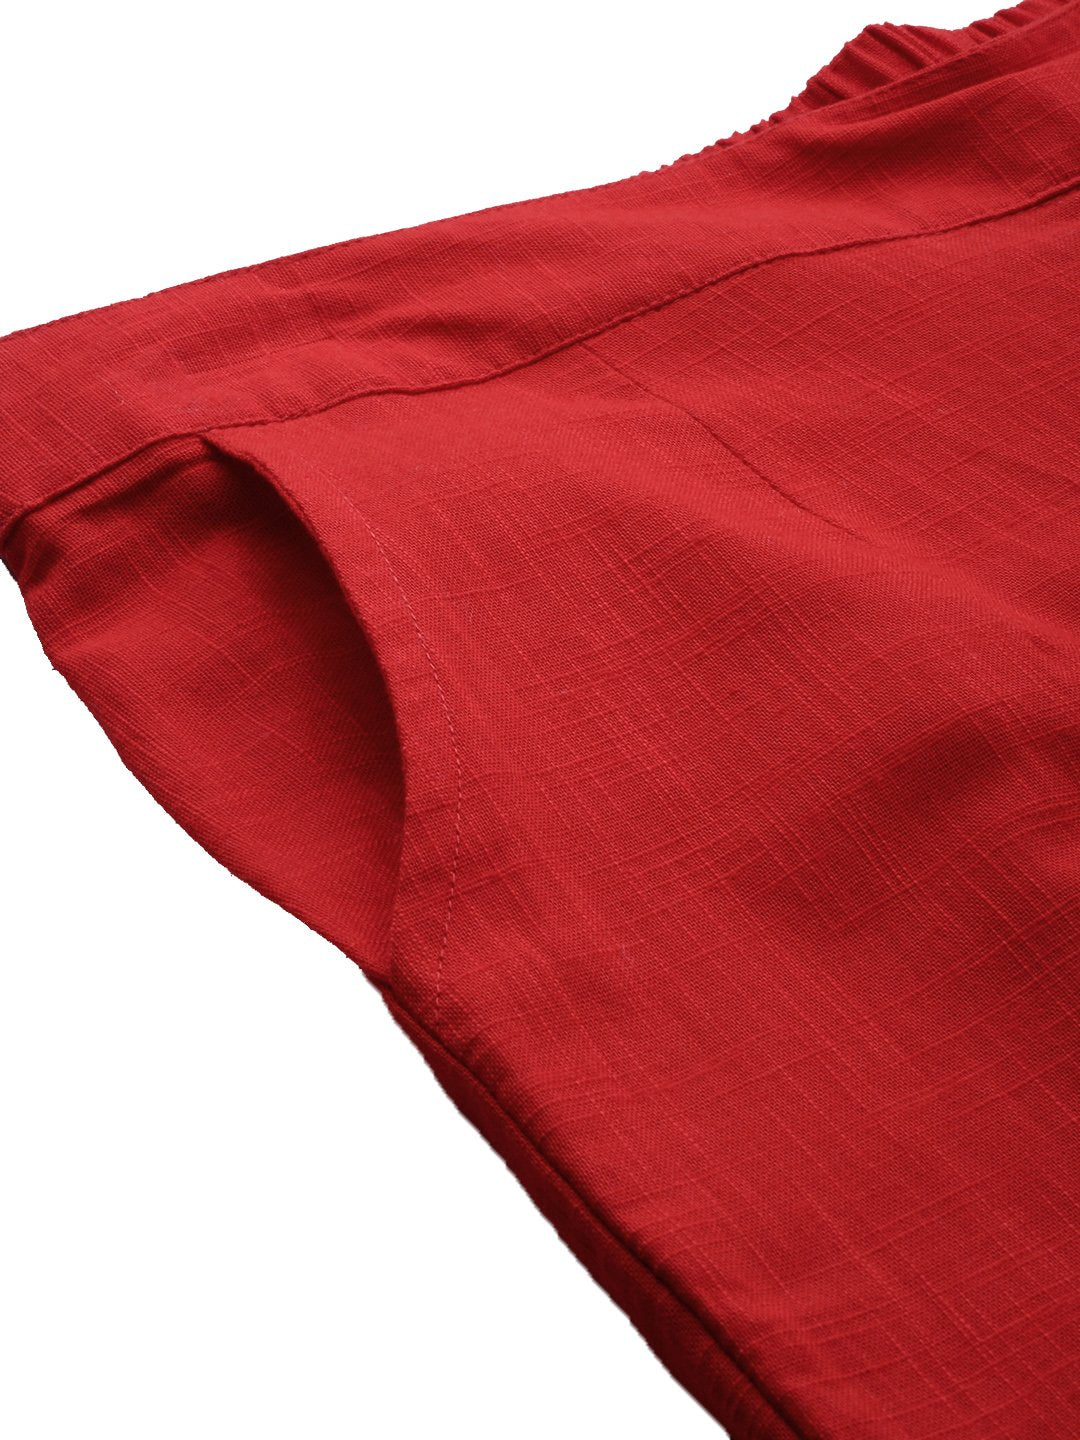 Women's Red Cotton Trouser - Divena